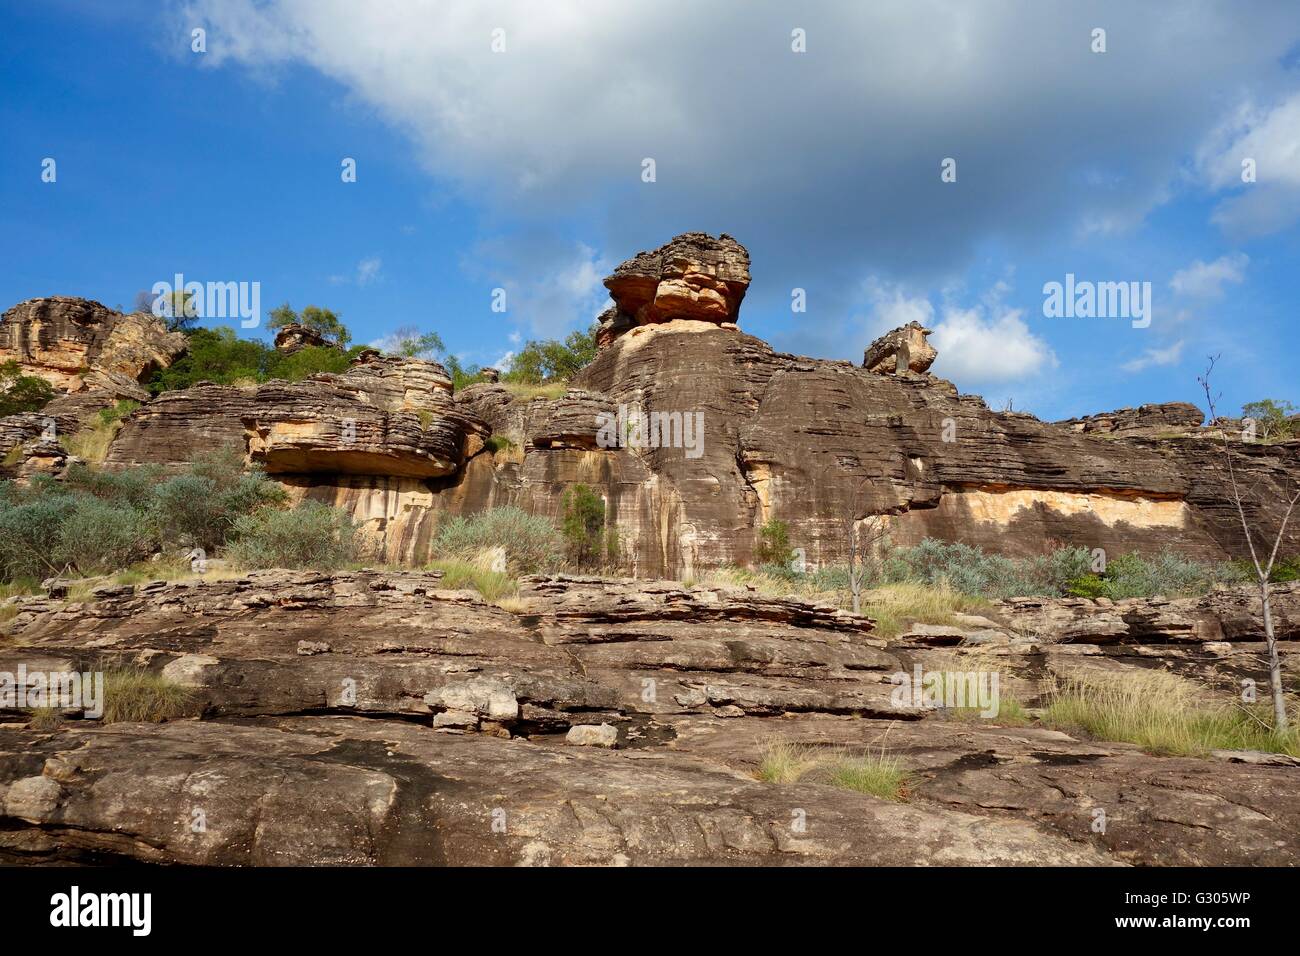 Vista de las rocas con pinturas rupestres conocida como el "Sitio ountford' cerca de East Alligator River, en el oeste de Arnhem Land, Australia Foto de stock